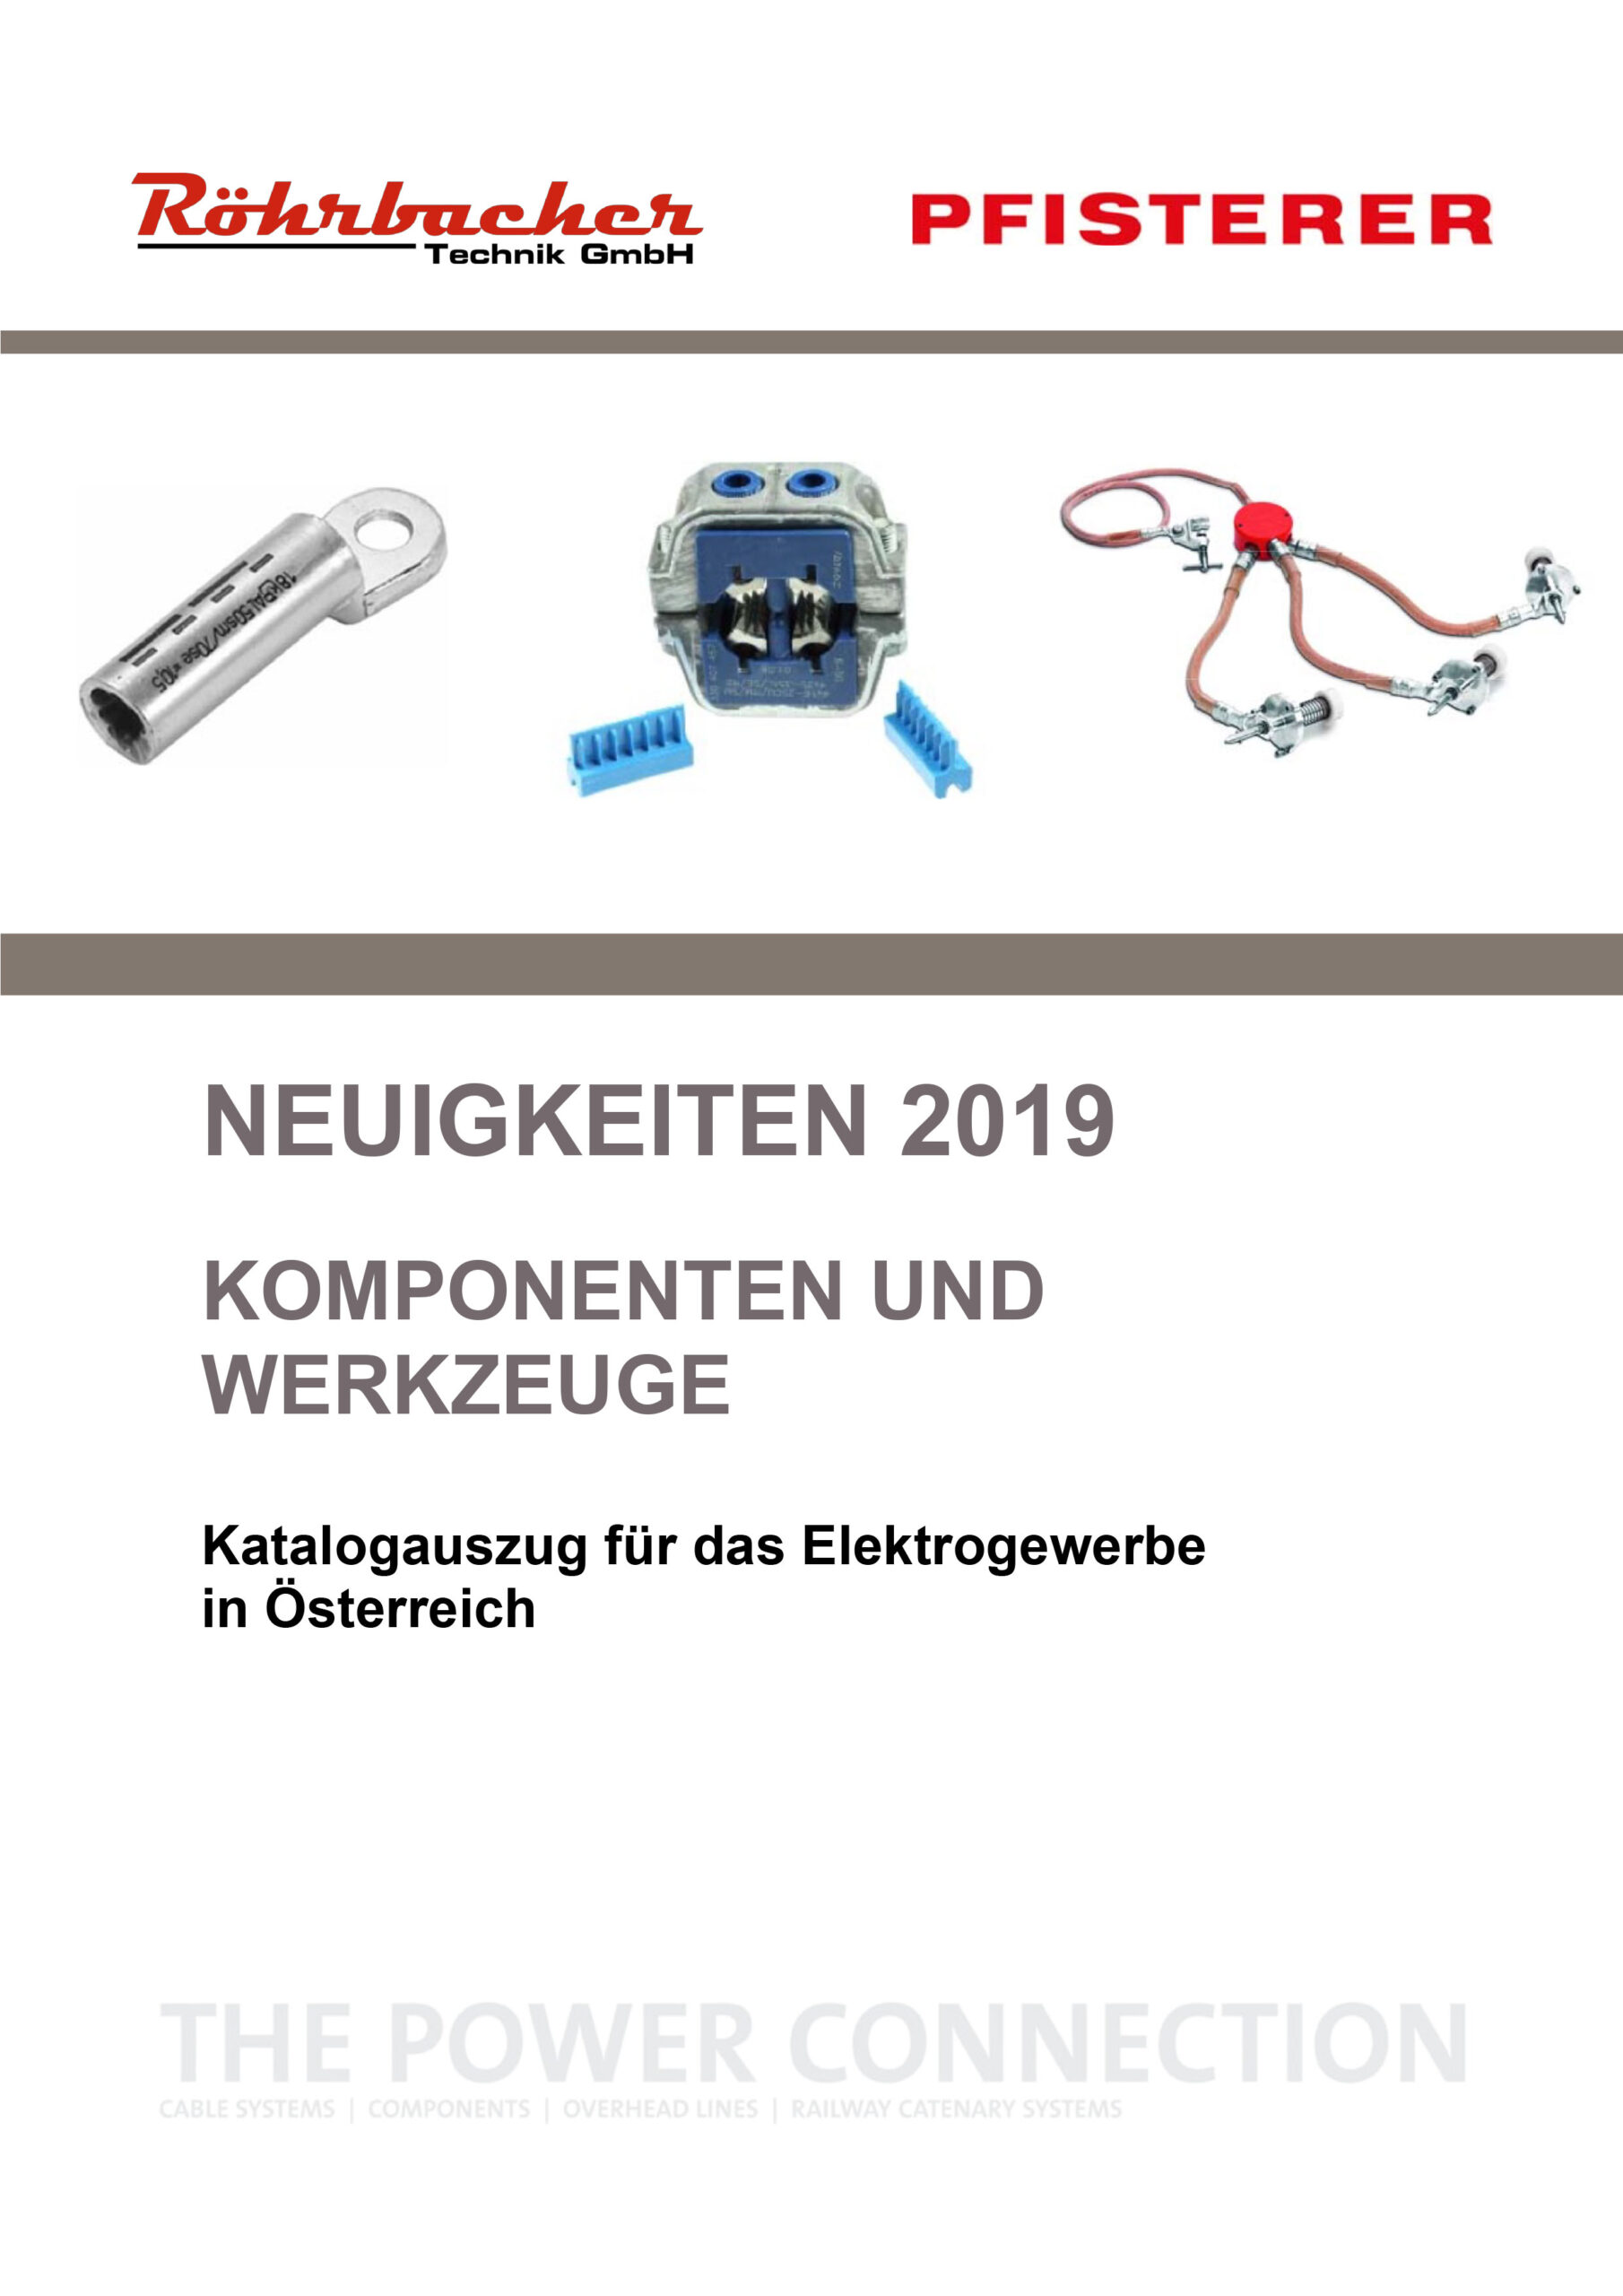 Katalog Cover - Pfisterer Neuigkeiten 2019